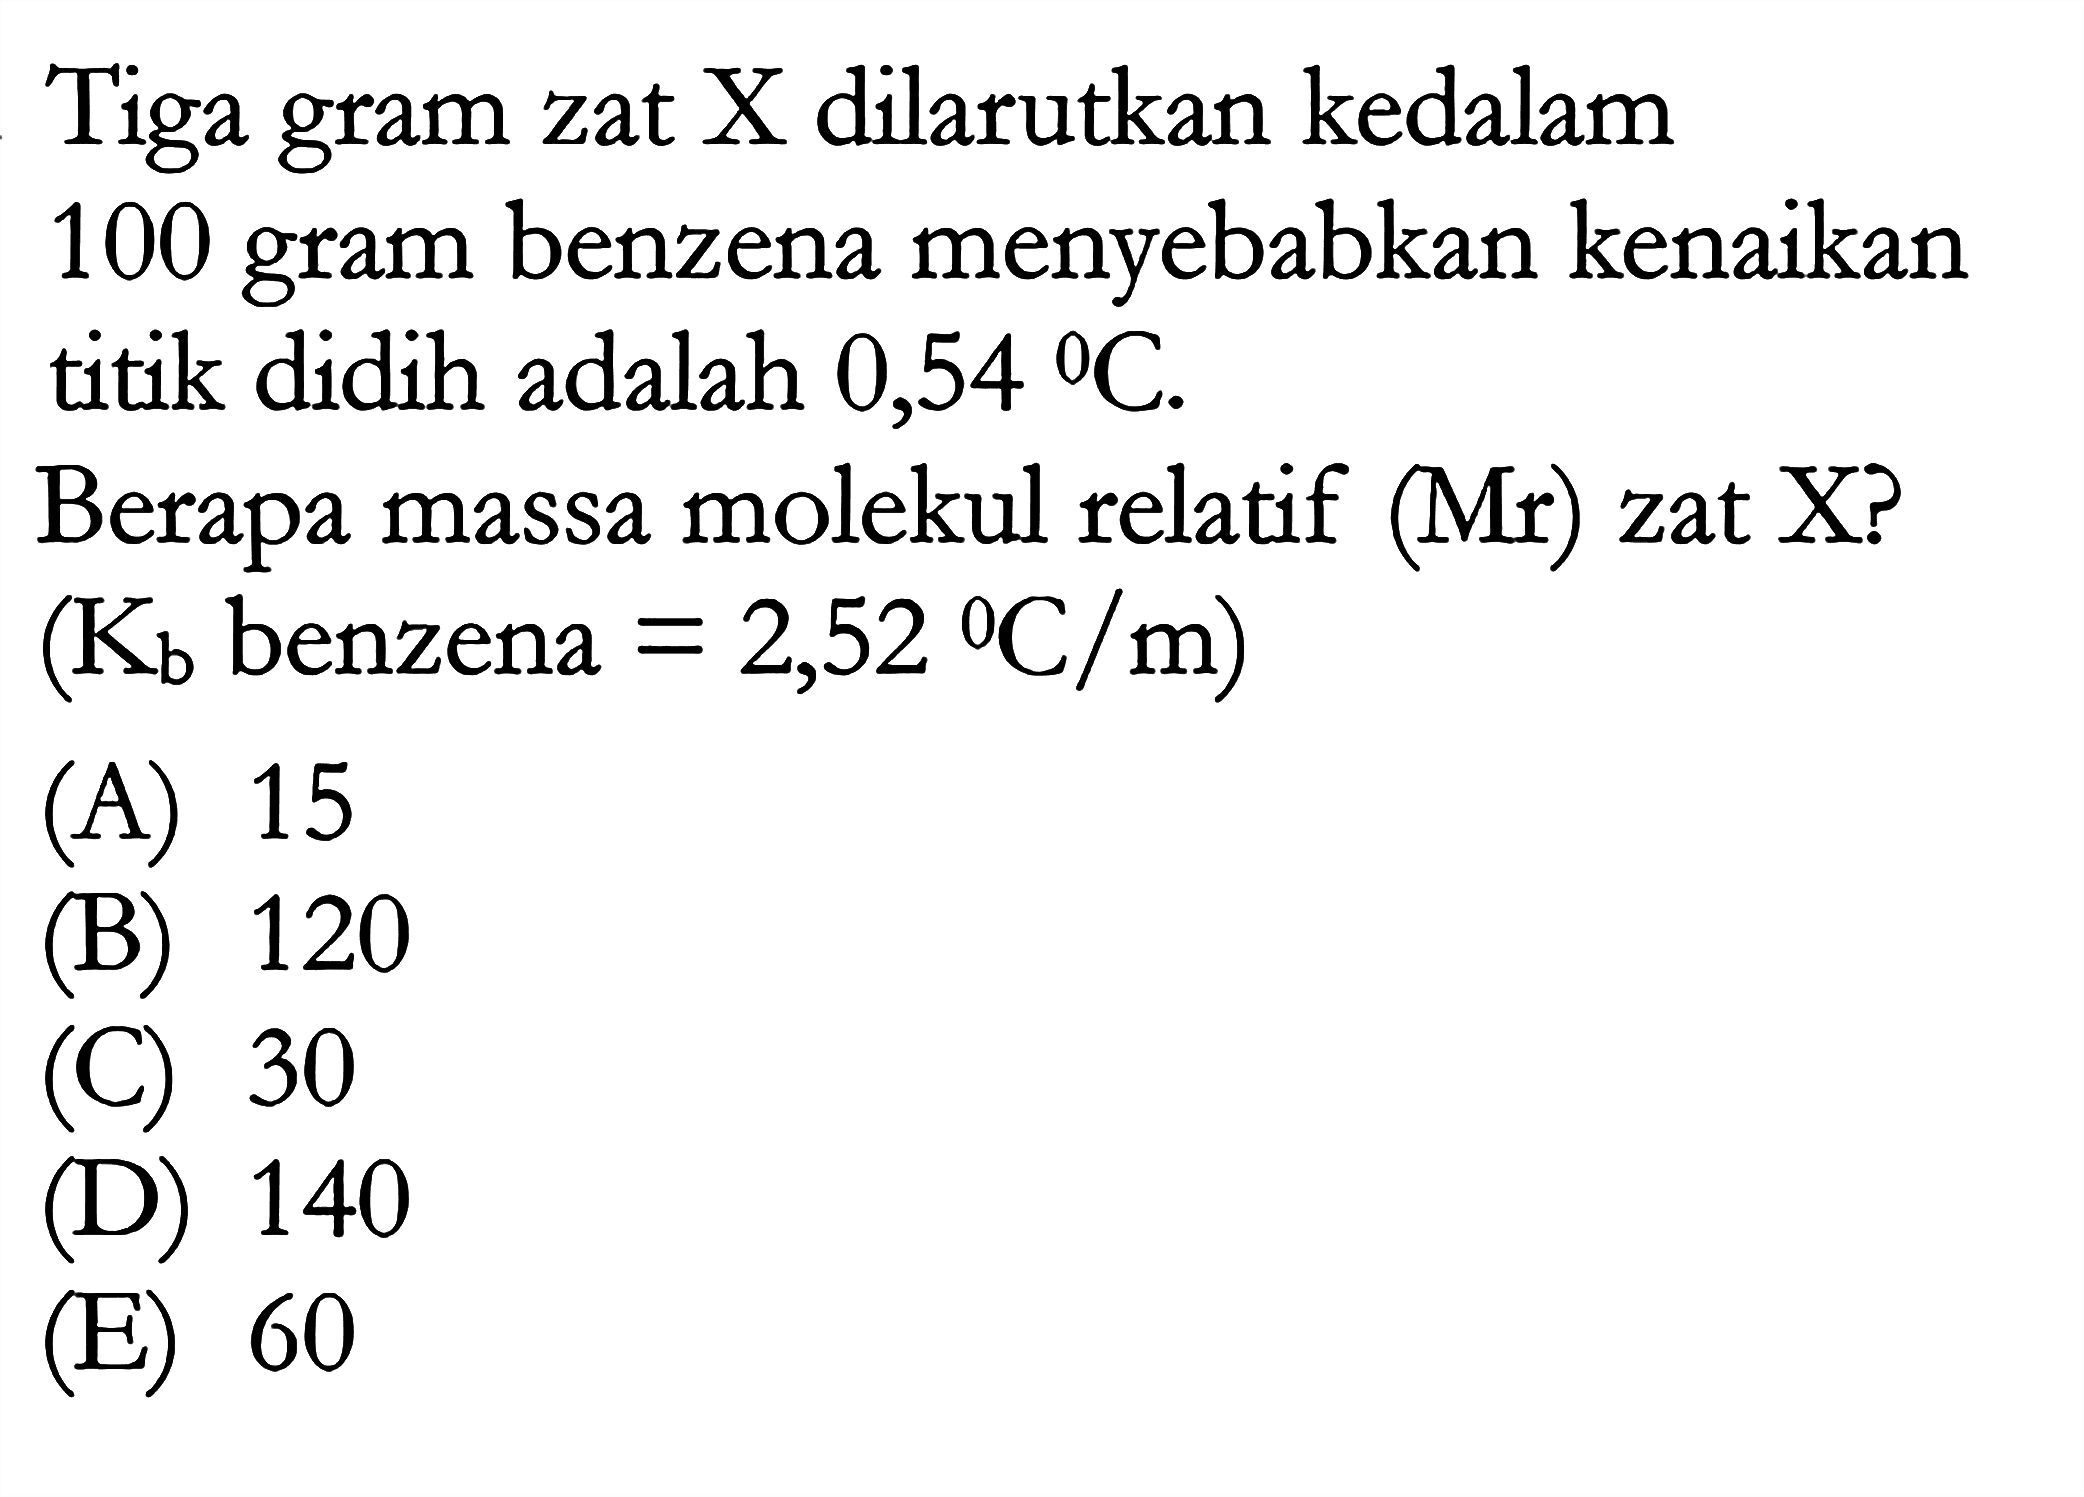 Tiga gram zat X dilarutkan kedalam 100 gram benzena menyebabkan kenaikan titik didih adalah 0,54 C. Berapa massa molekul relatif (Mr) zat X? (Kb benzena = 2,52 C/m)